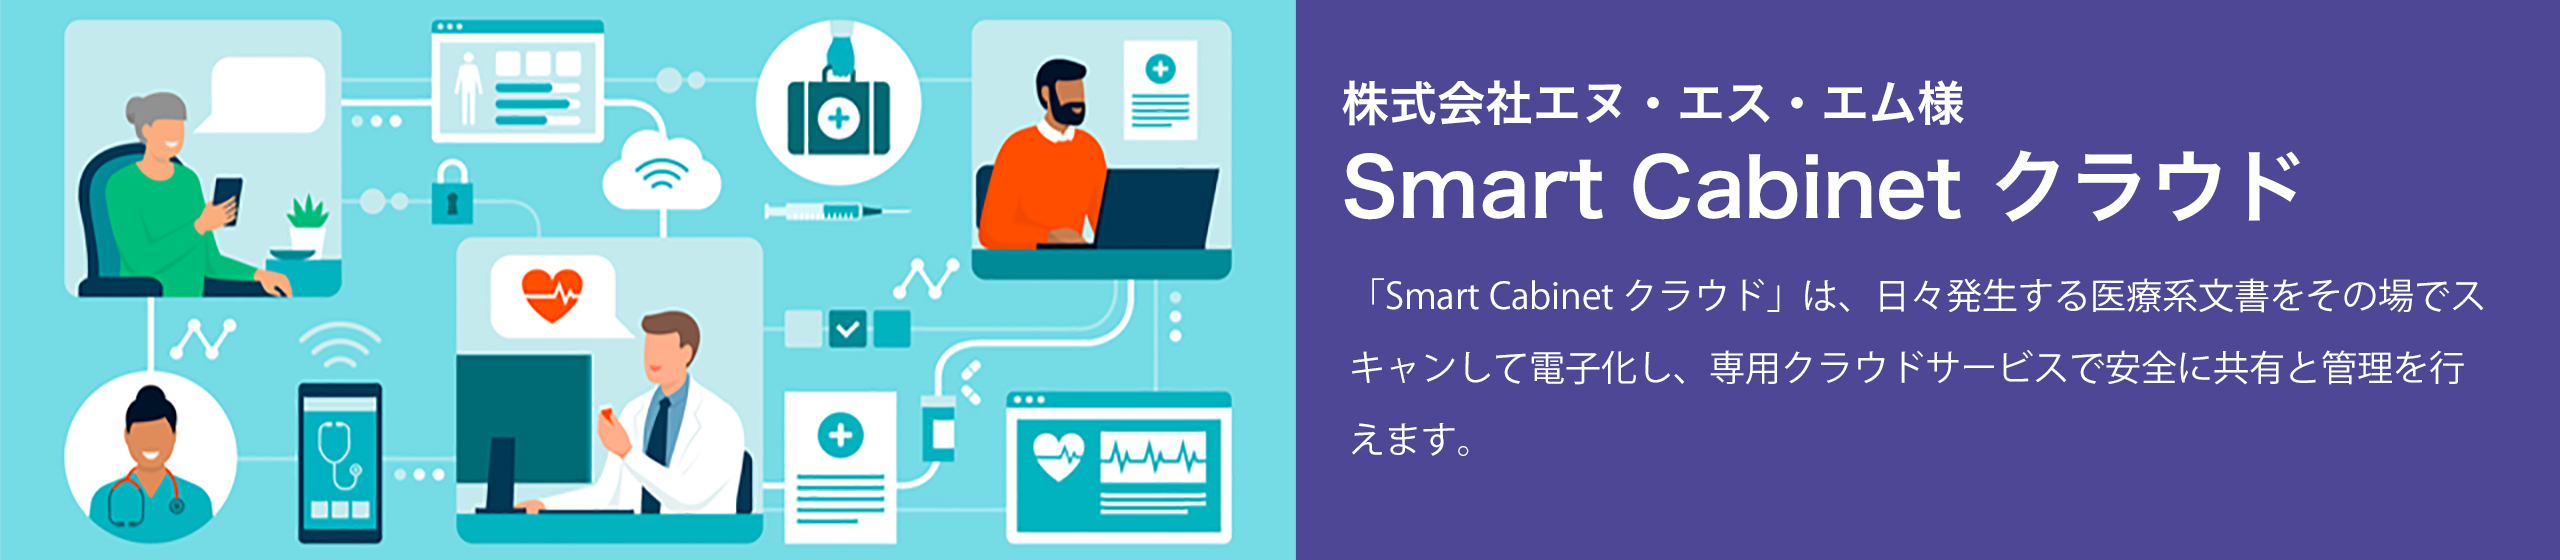  Smart Cabinet クラウド / e-文書法対応ドキュメントソリューション 